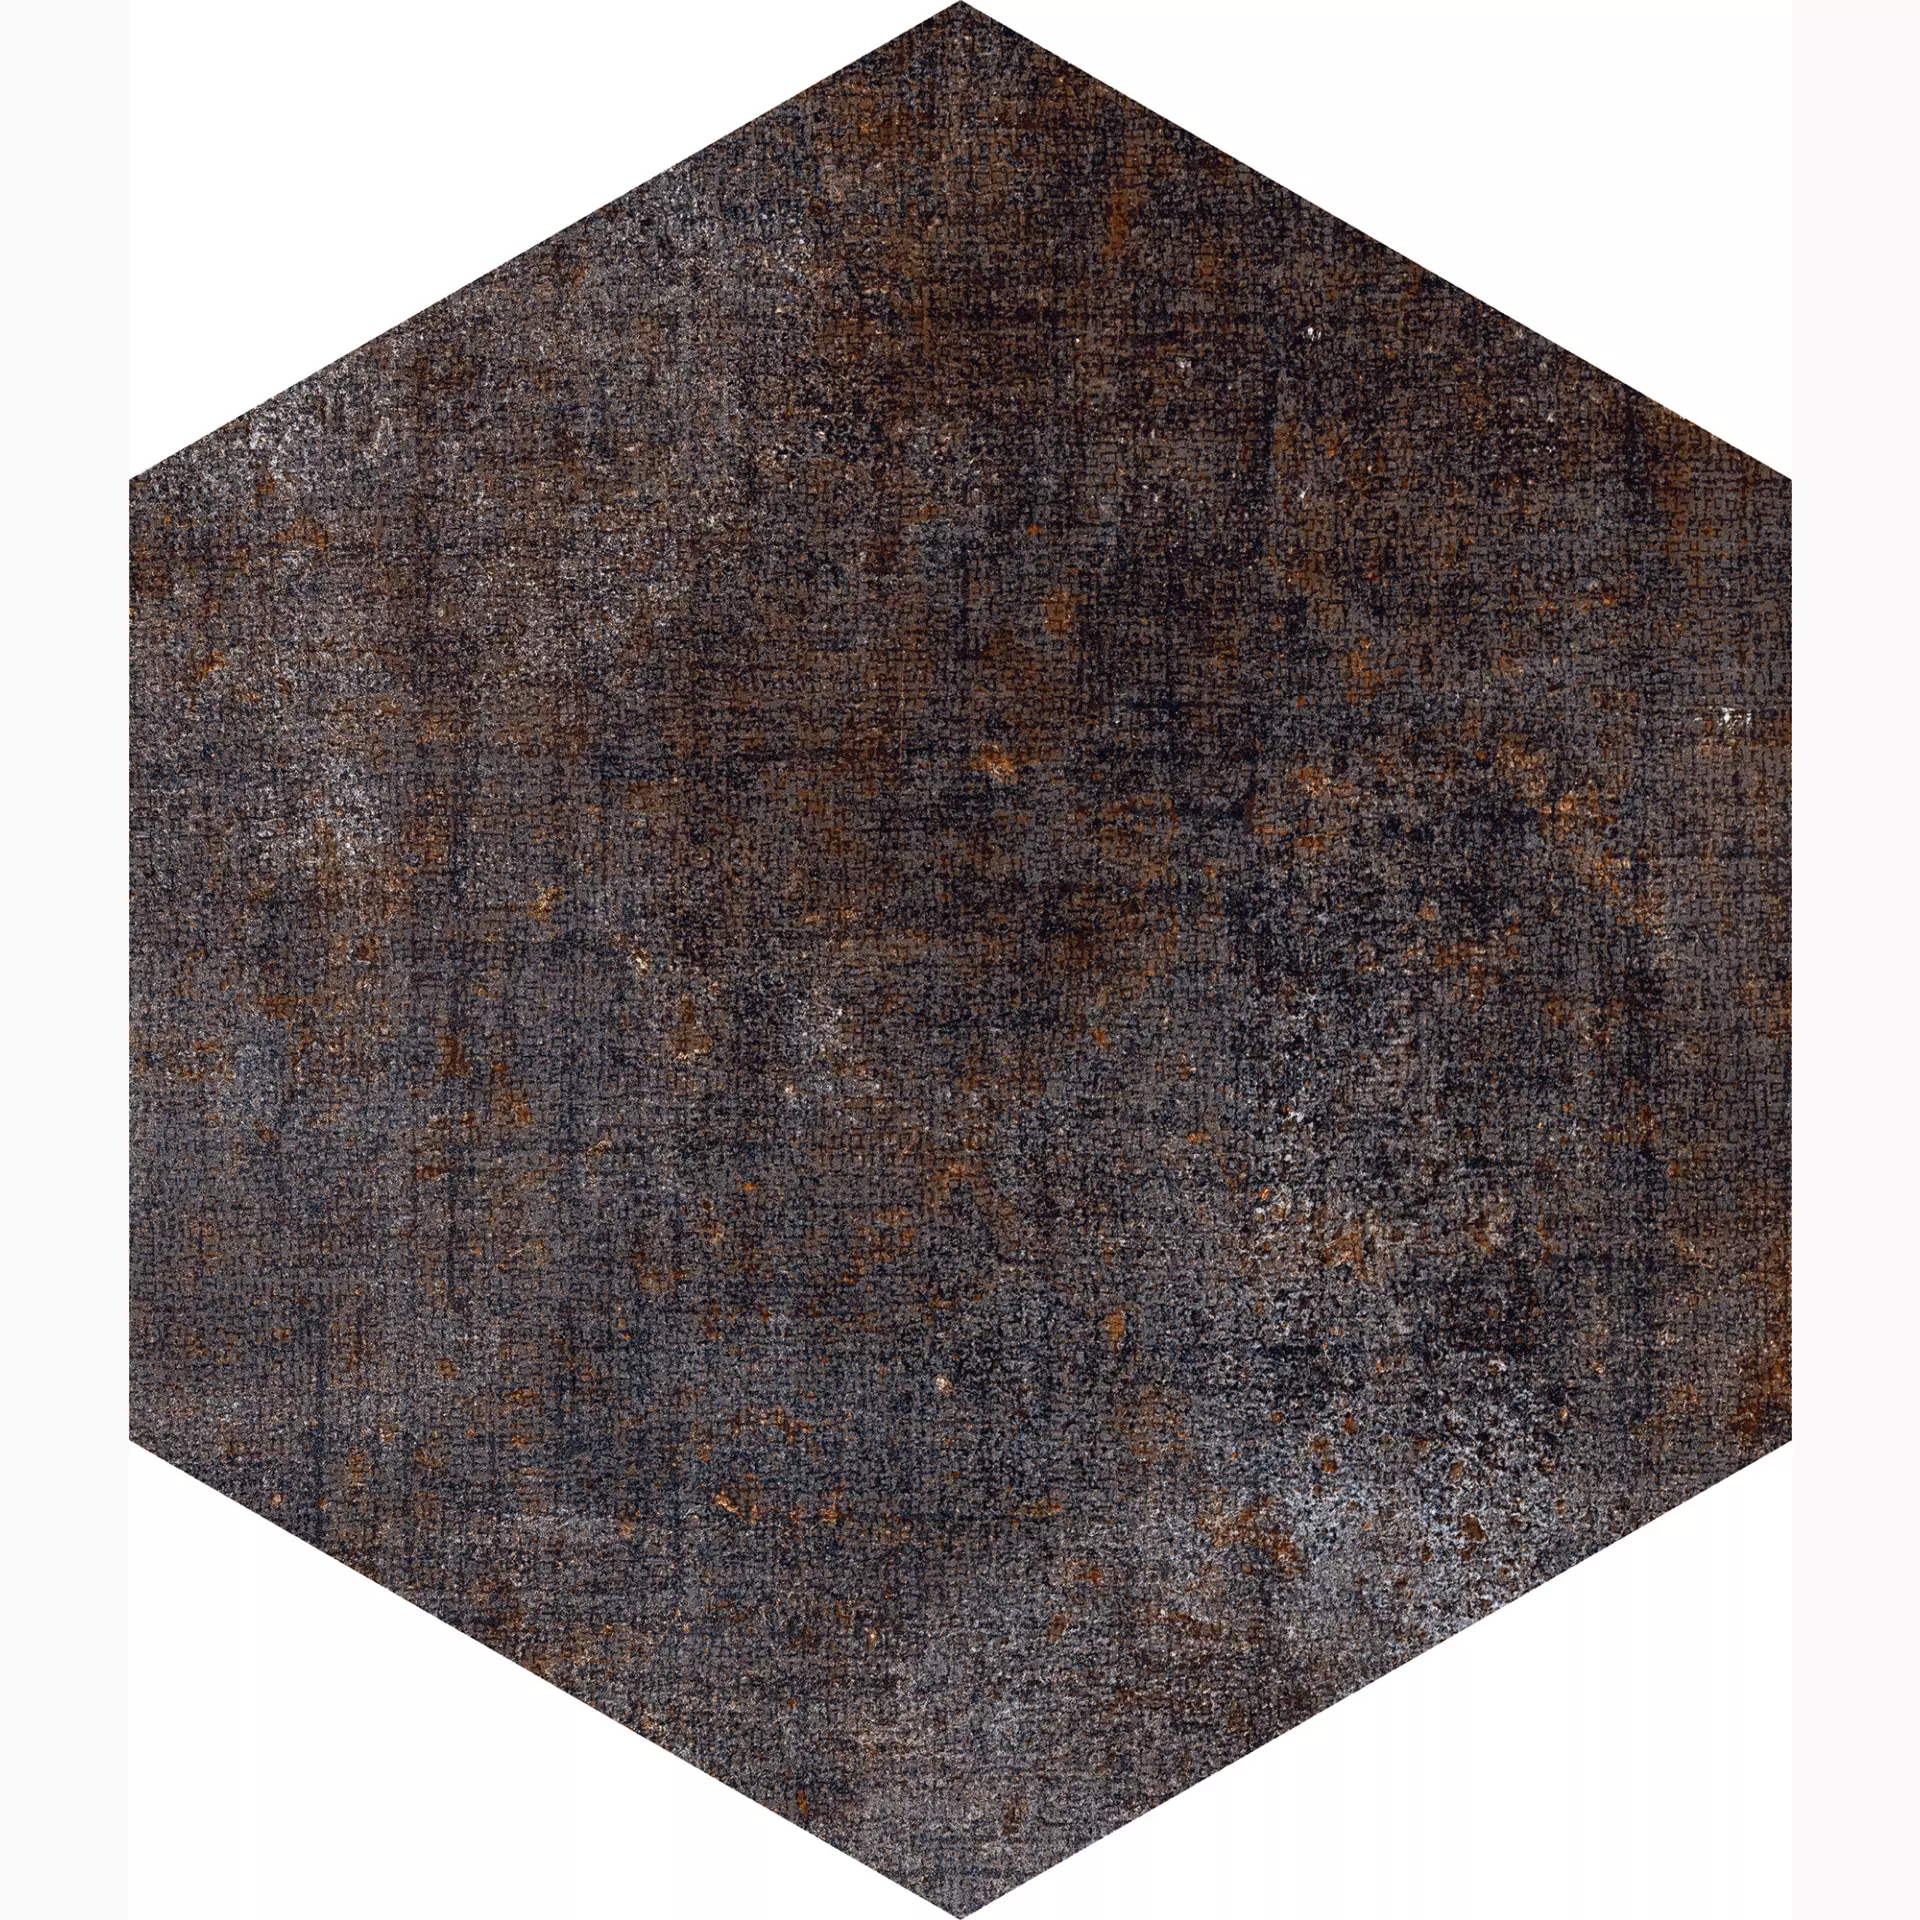 Marcacorona Textile Dark Naturale – Matt Esagona D568 21,6x25cm 9mm